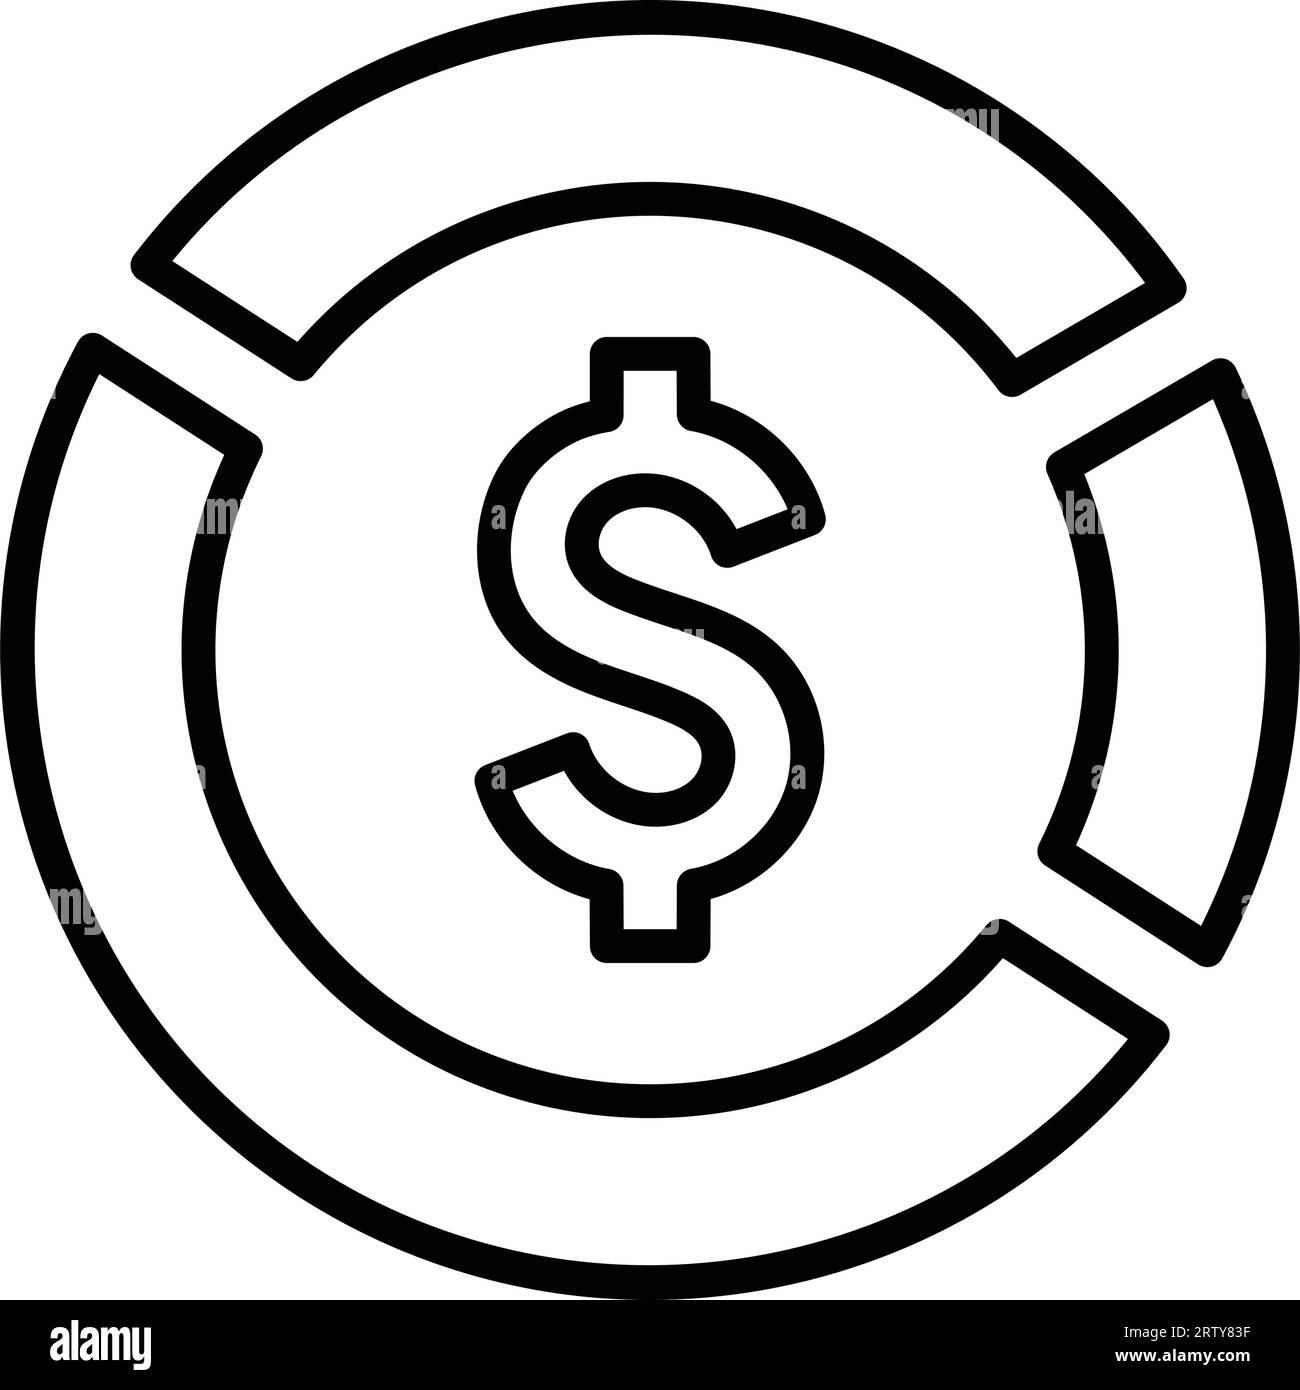 Icône Money Pie Chart - utilisation parfaite pour les fichiers imprimés et les présentations, la conception et le développement de sites Web, de matériel promotionnel, d'illustrations ou tout autre Illustration de Vecteur